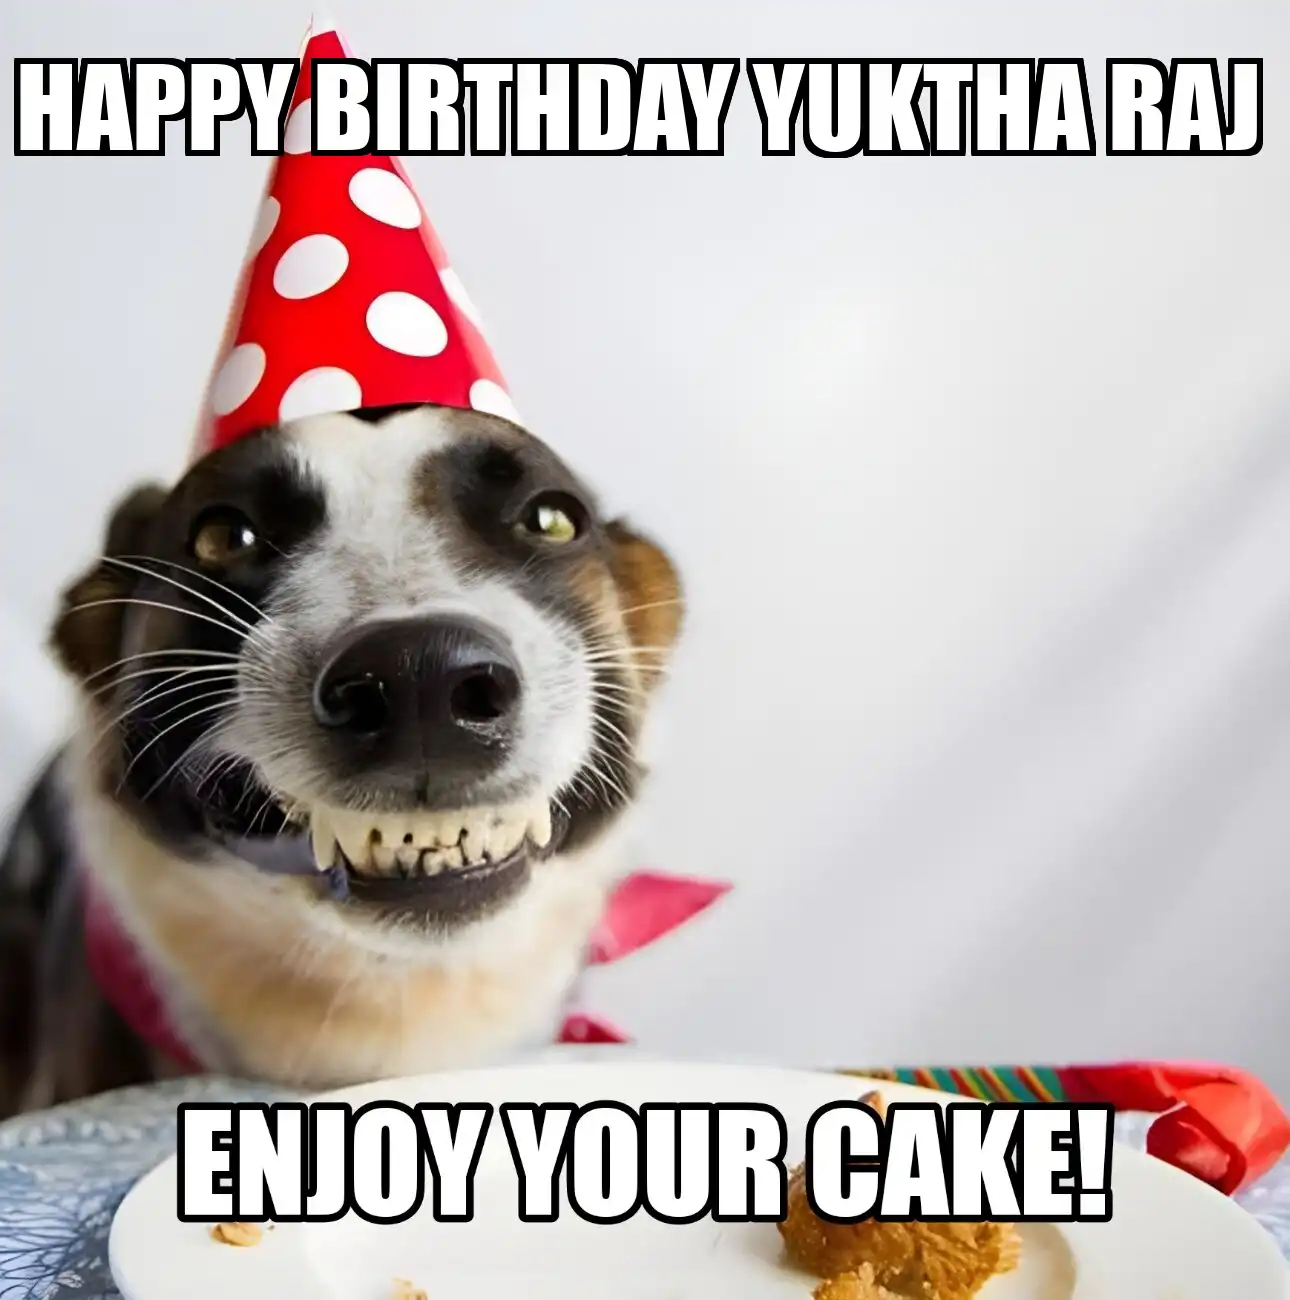 Happy Birthday Yuktha raj Enjoy Your Cake Dog Meme